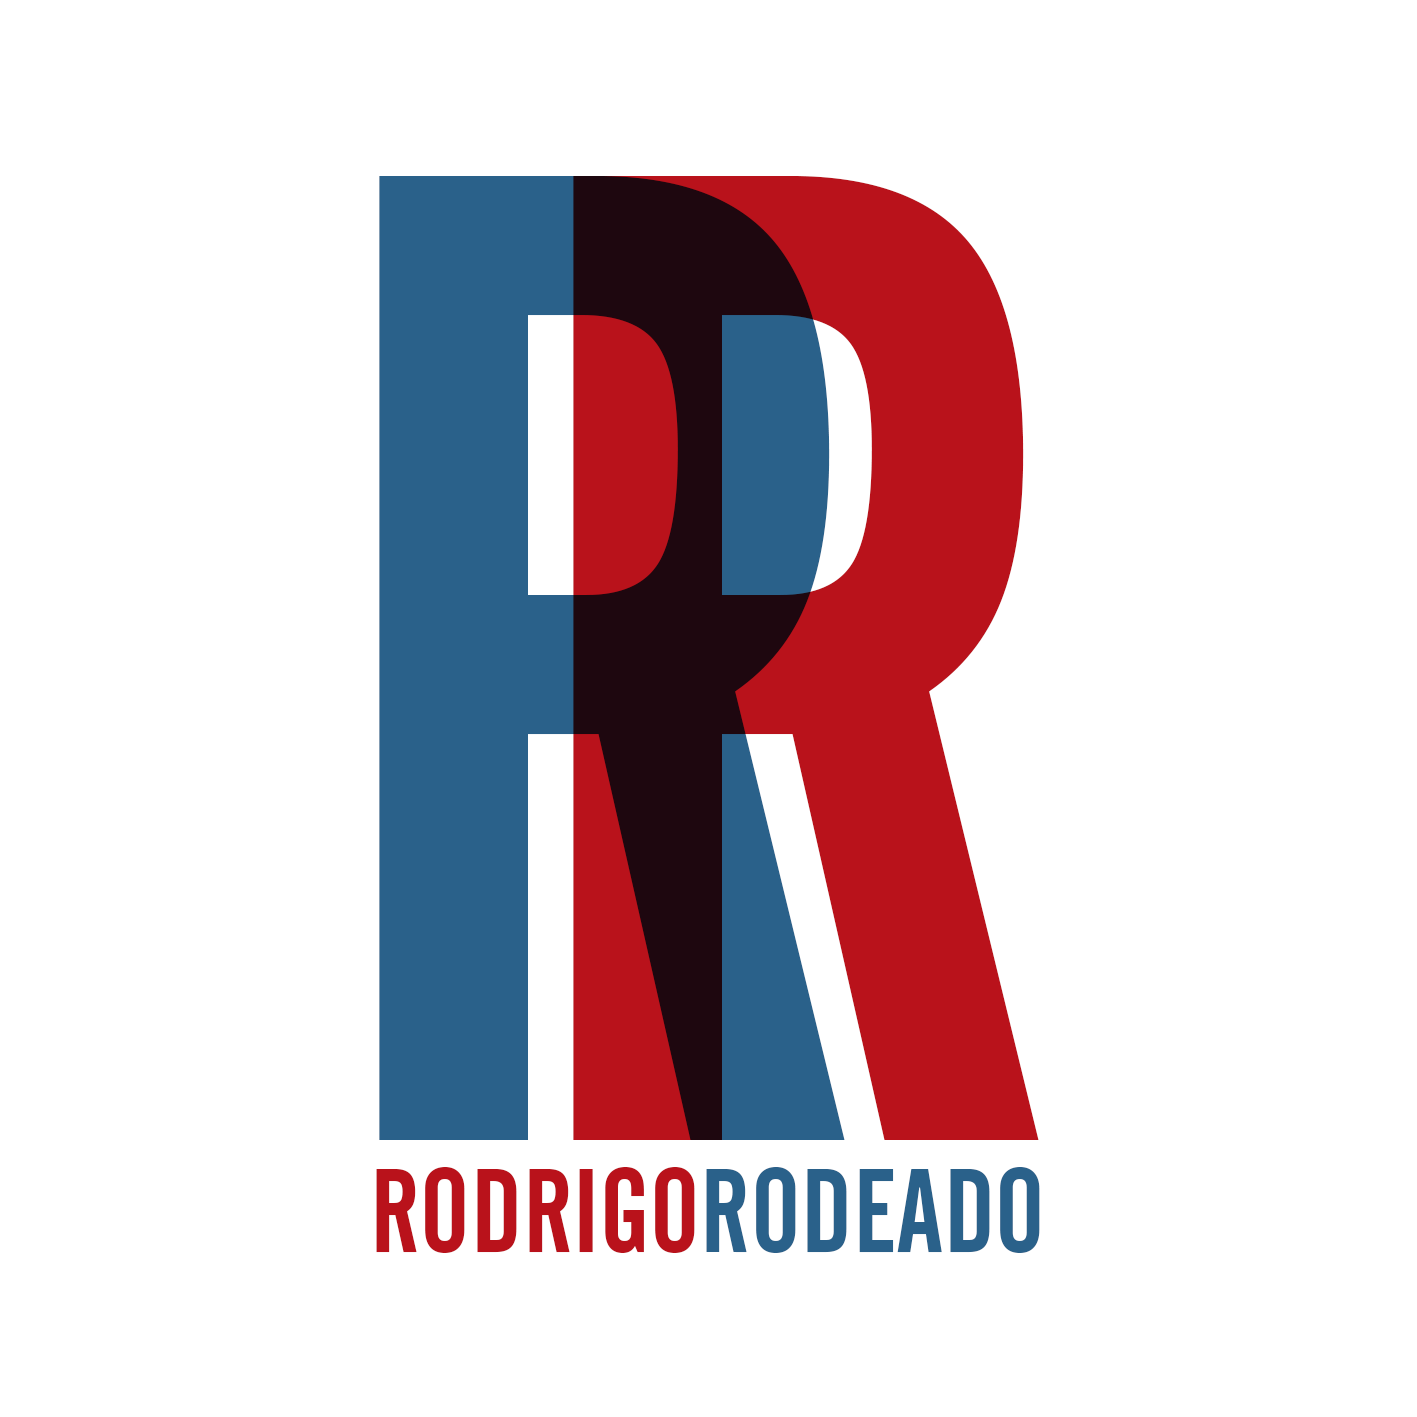 Rodrigo Rodeado